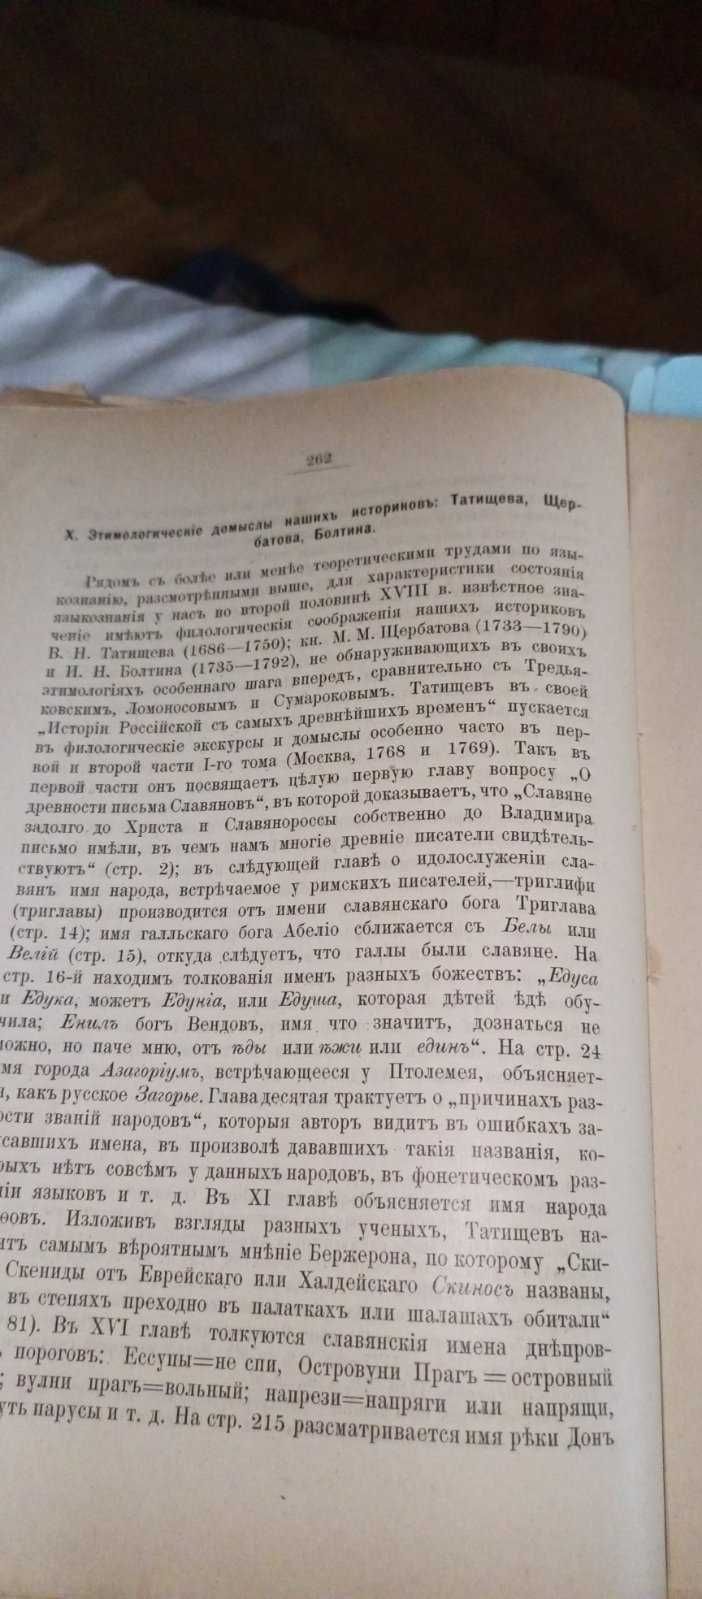 труд по филологии ( языковедение) 1841 - 1914 гг. автор неизвестен